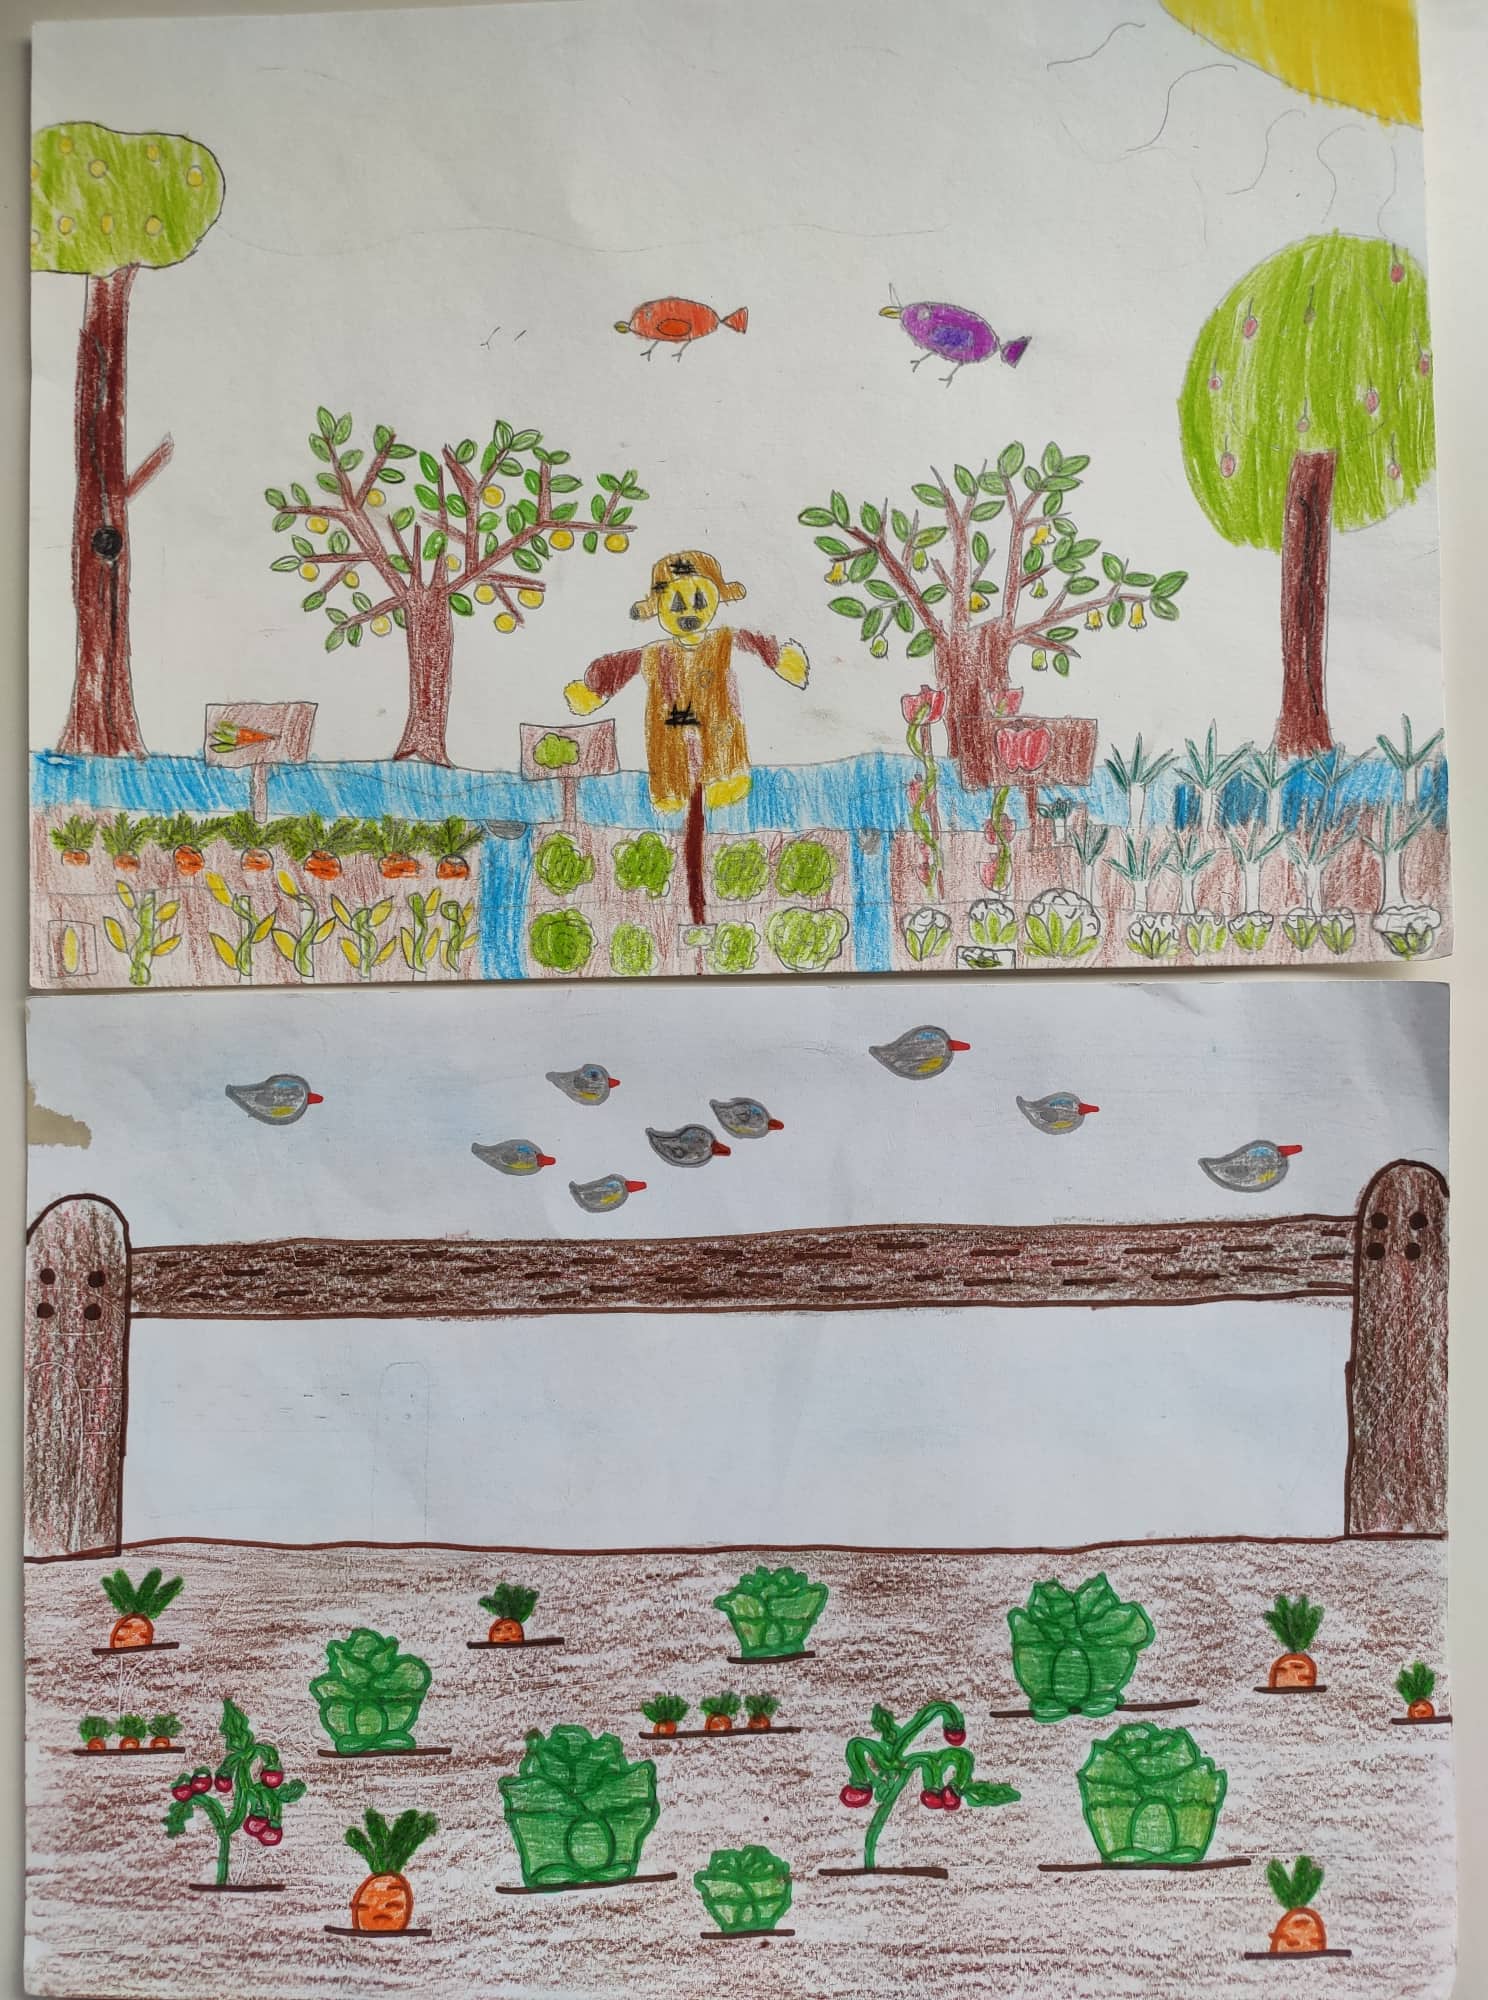 Segredos da Horta - Em cima, ilustração de um truque usado pelos agricultores para proteger as suas culturas do Pombo Trocaz. Em baixo, ilustração de uma dica muito usada pelos agricultores para afugentar os pássaros - espantalho.